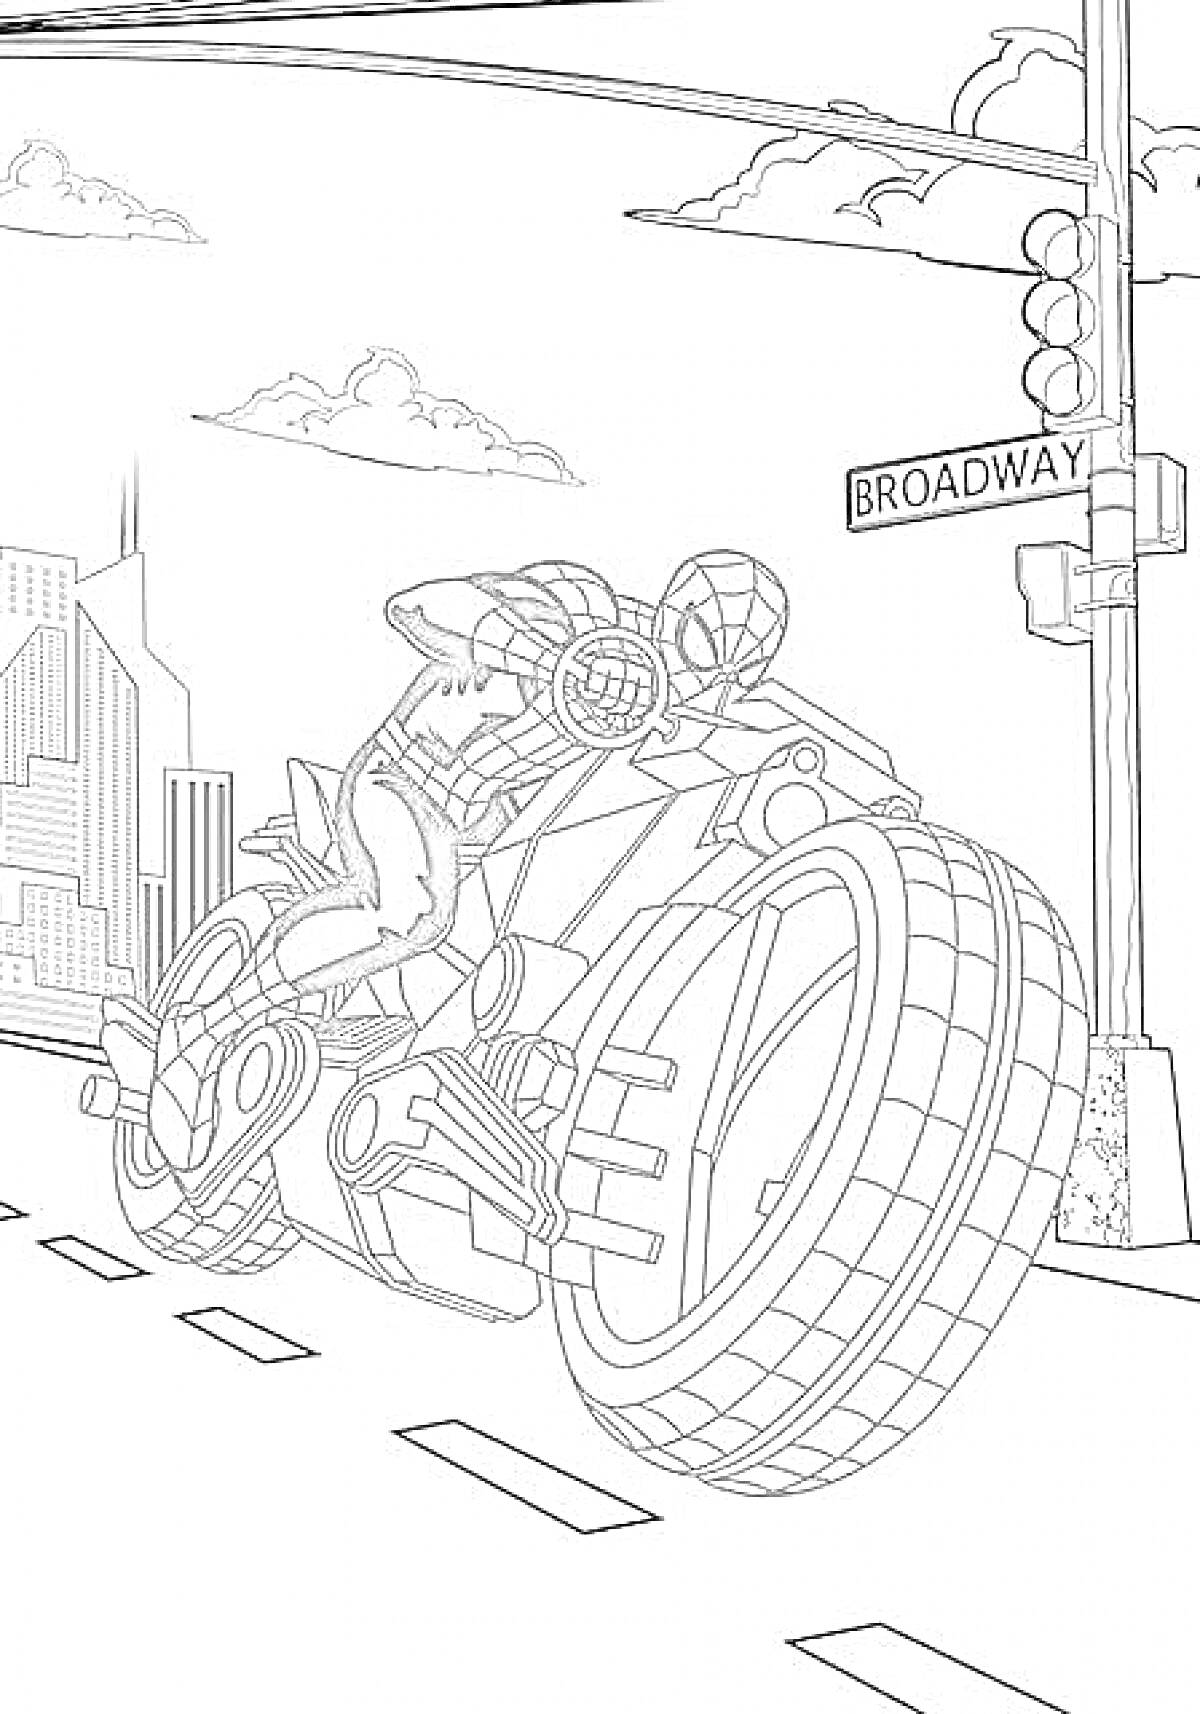 Раскраска Человек-паук на мотоцикле на улице с вывеской 